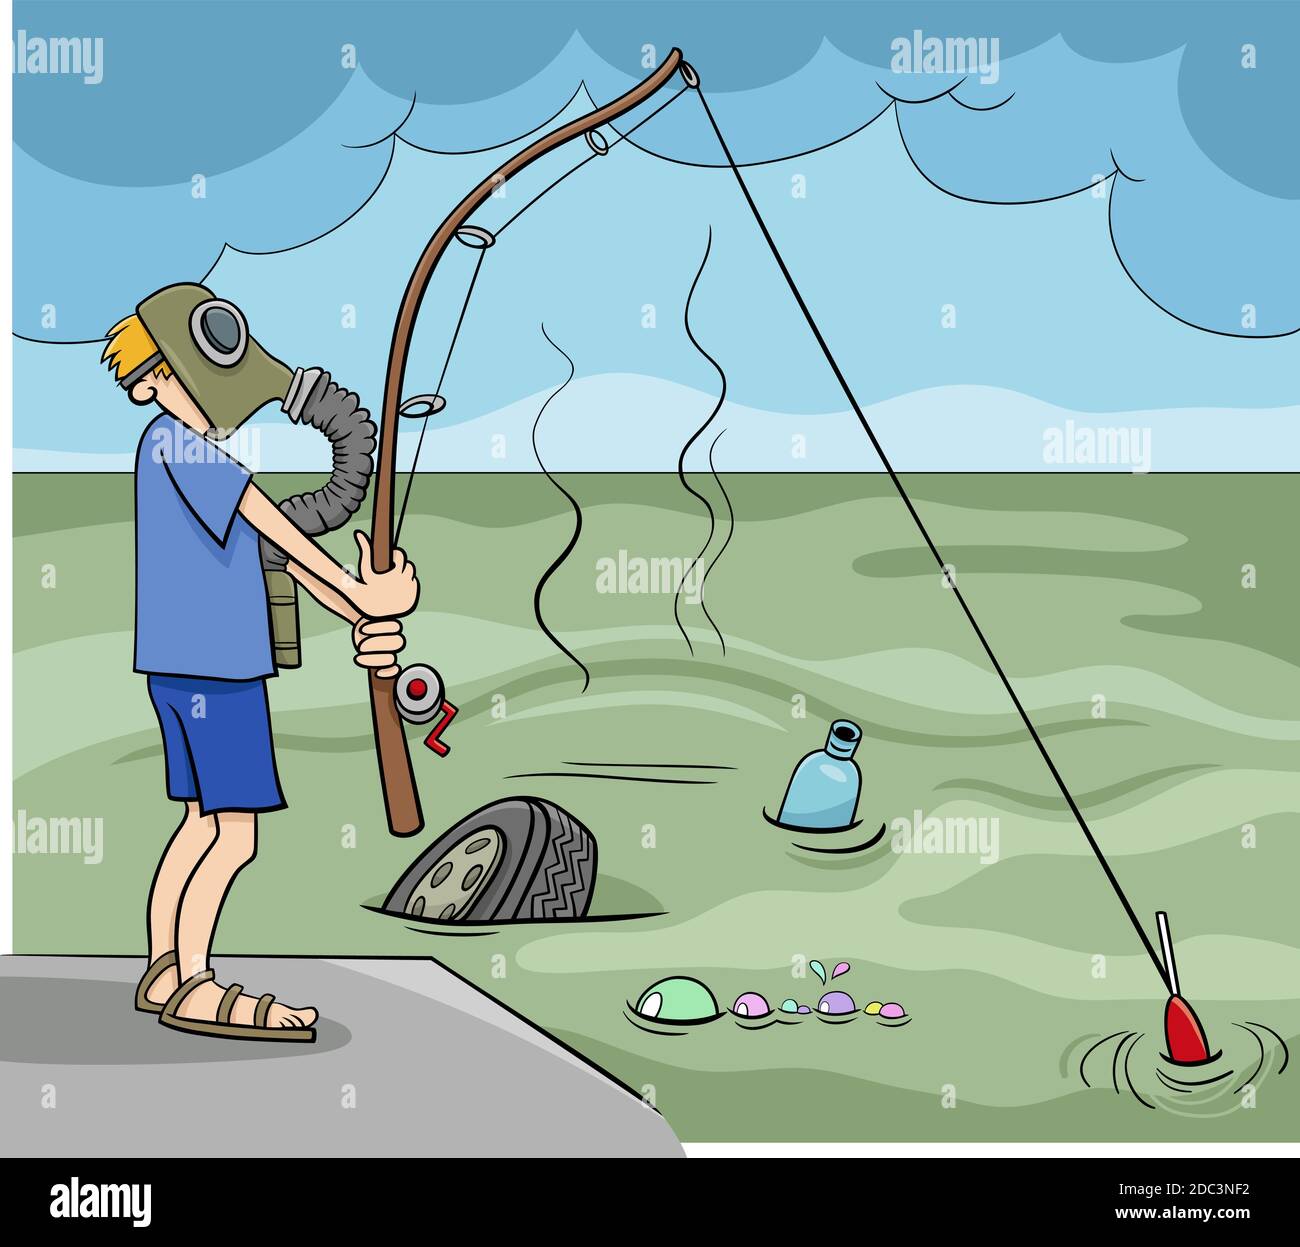 Vectores e ilustraciones de Cañas de pescar para descargar gratis